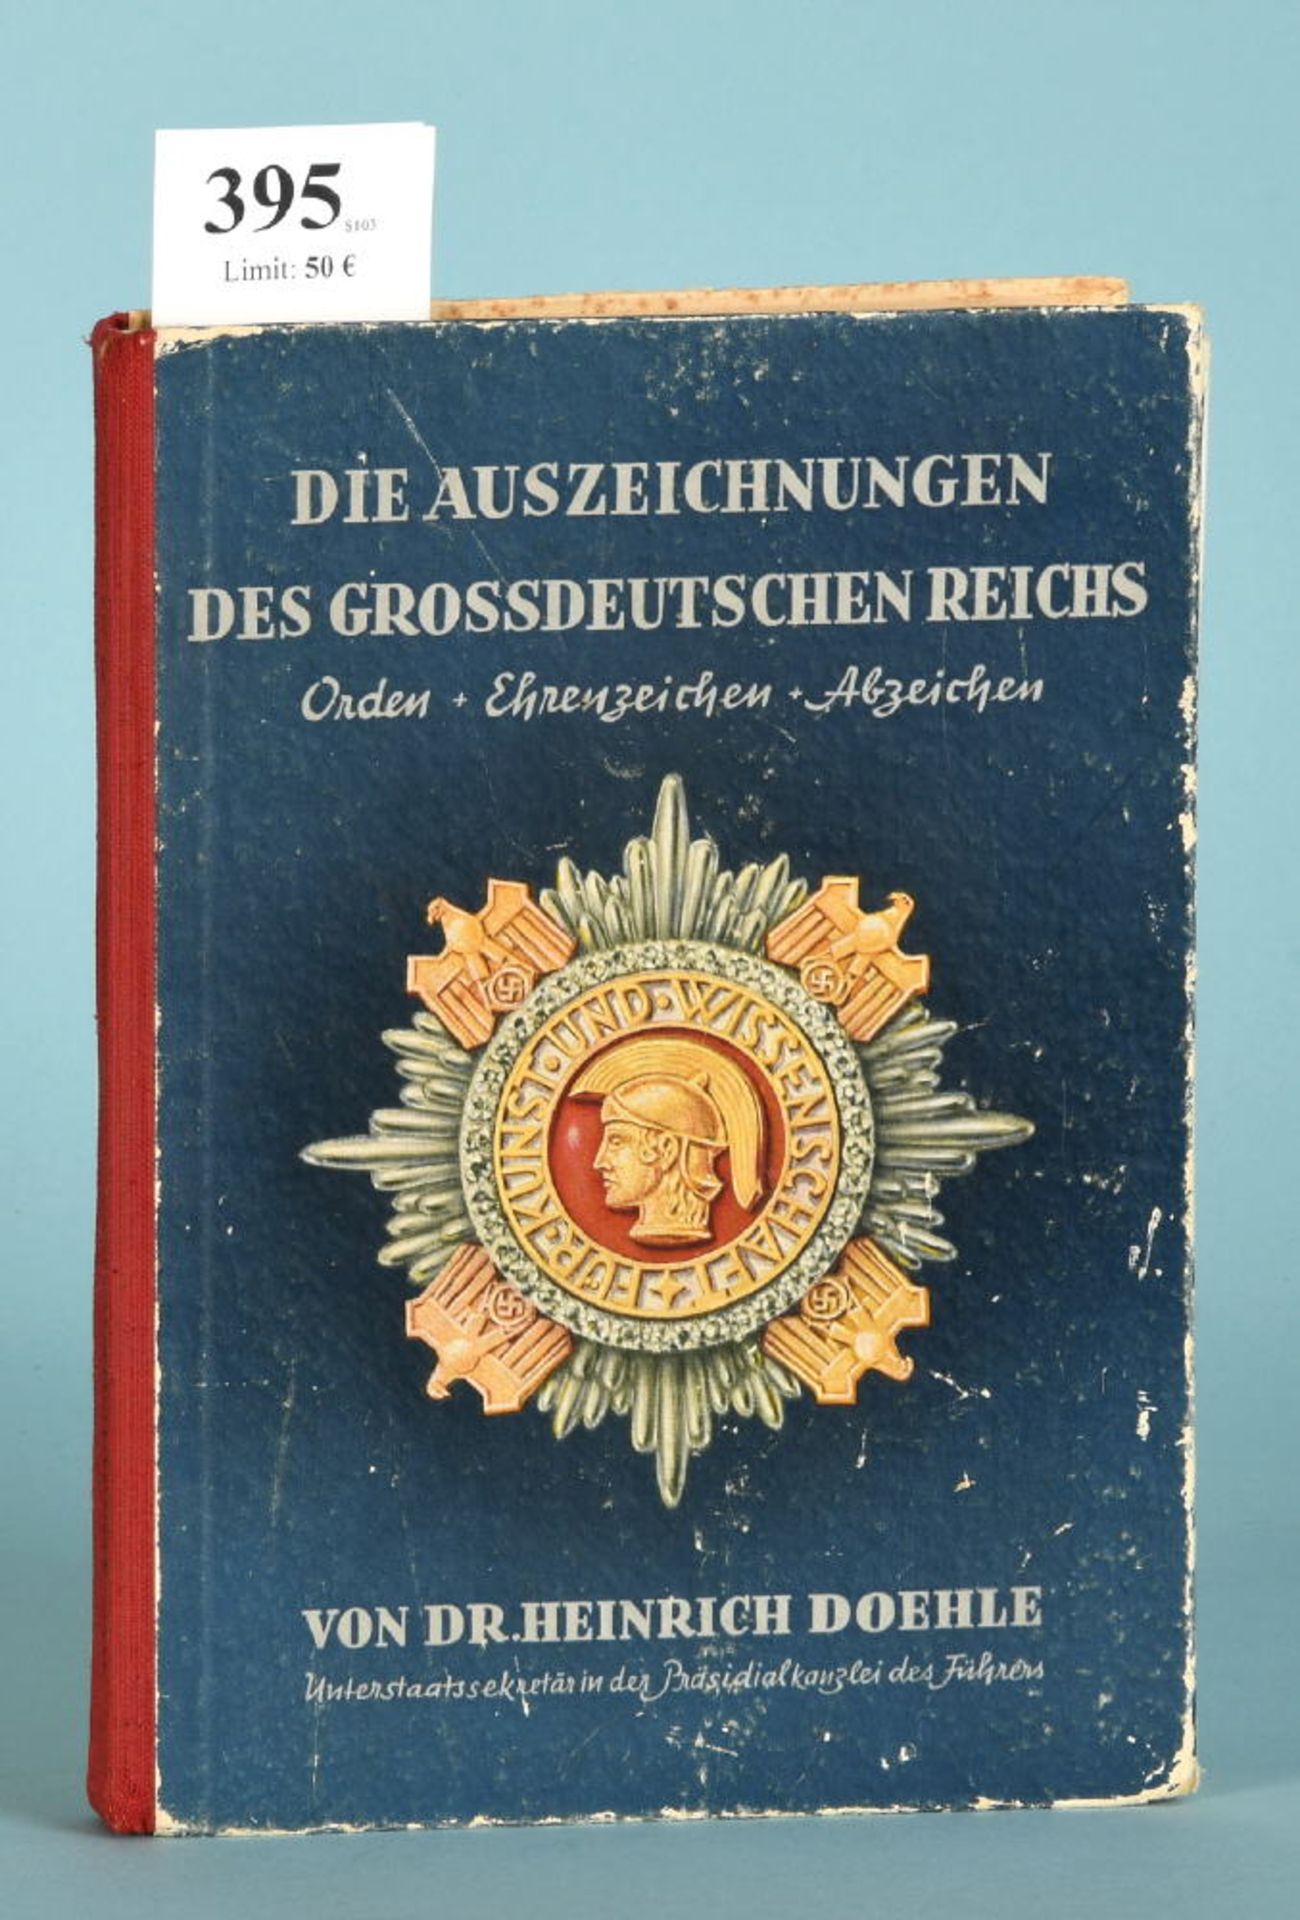 Doehle, Heinrich "Die Auszeichnungen des Großdeutschen...""...Reichs - Orden, Ehrenzeichen,